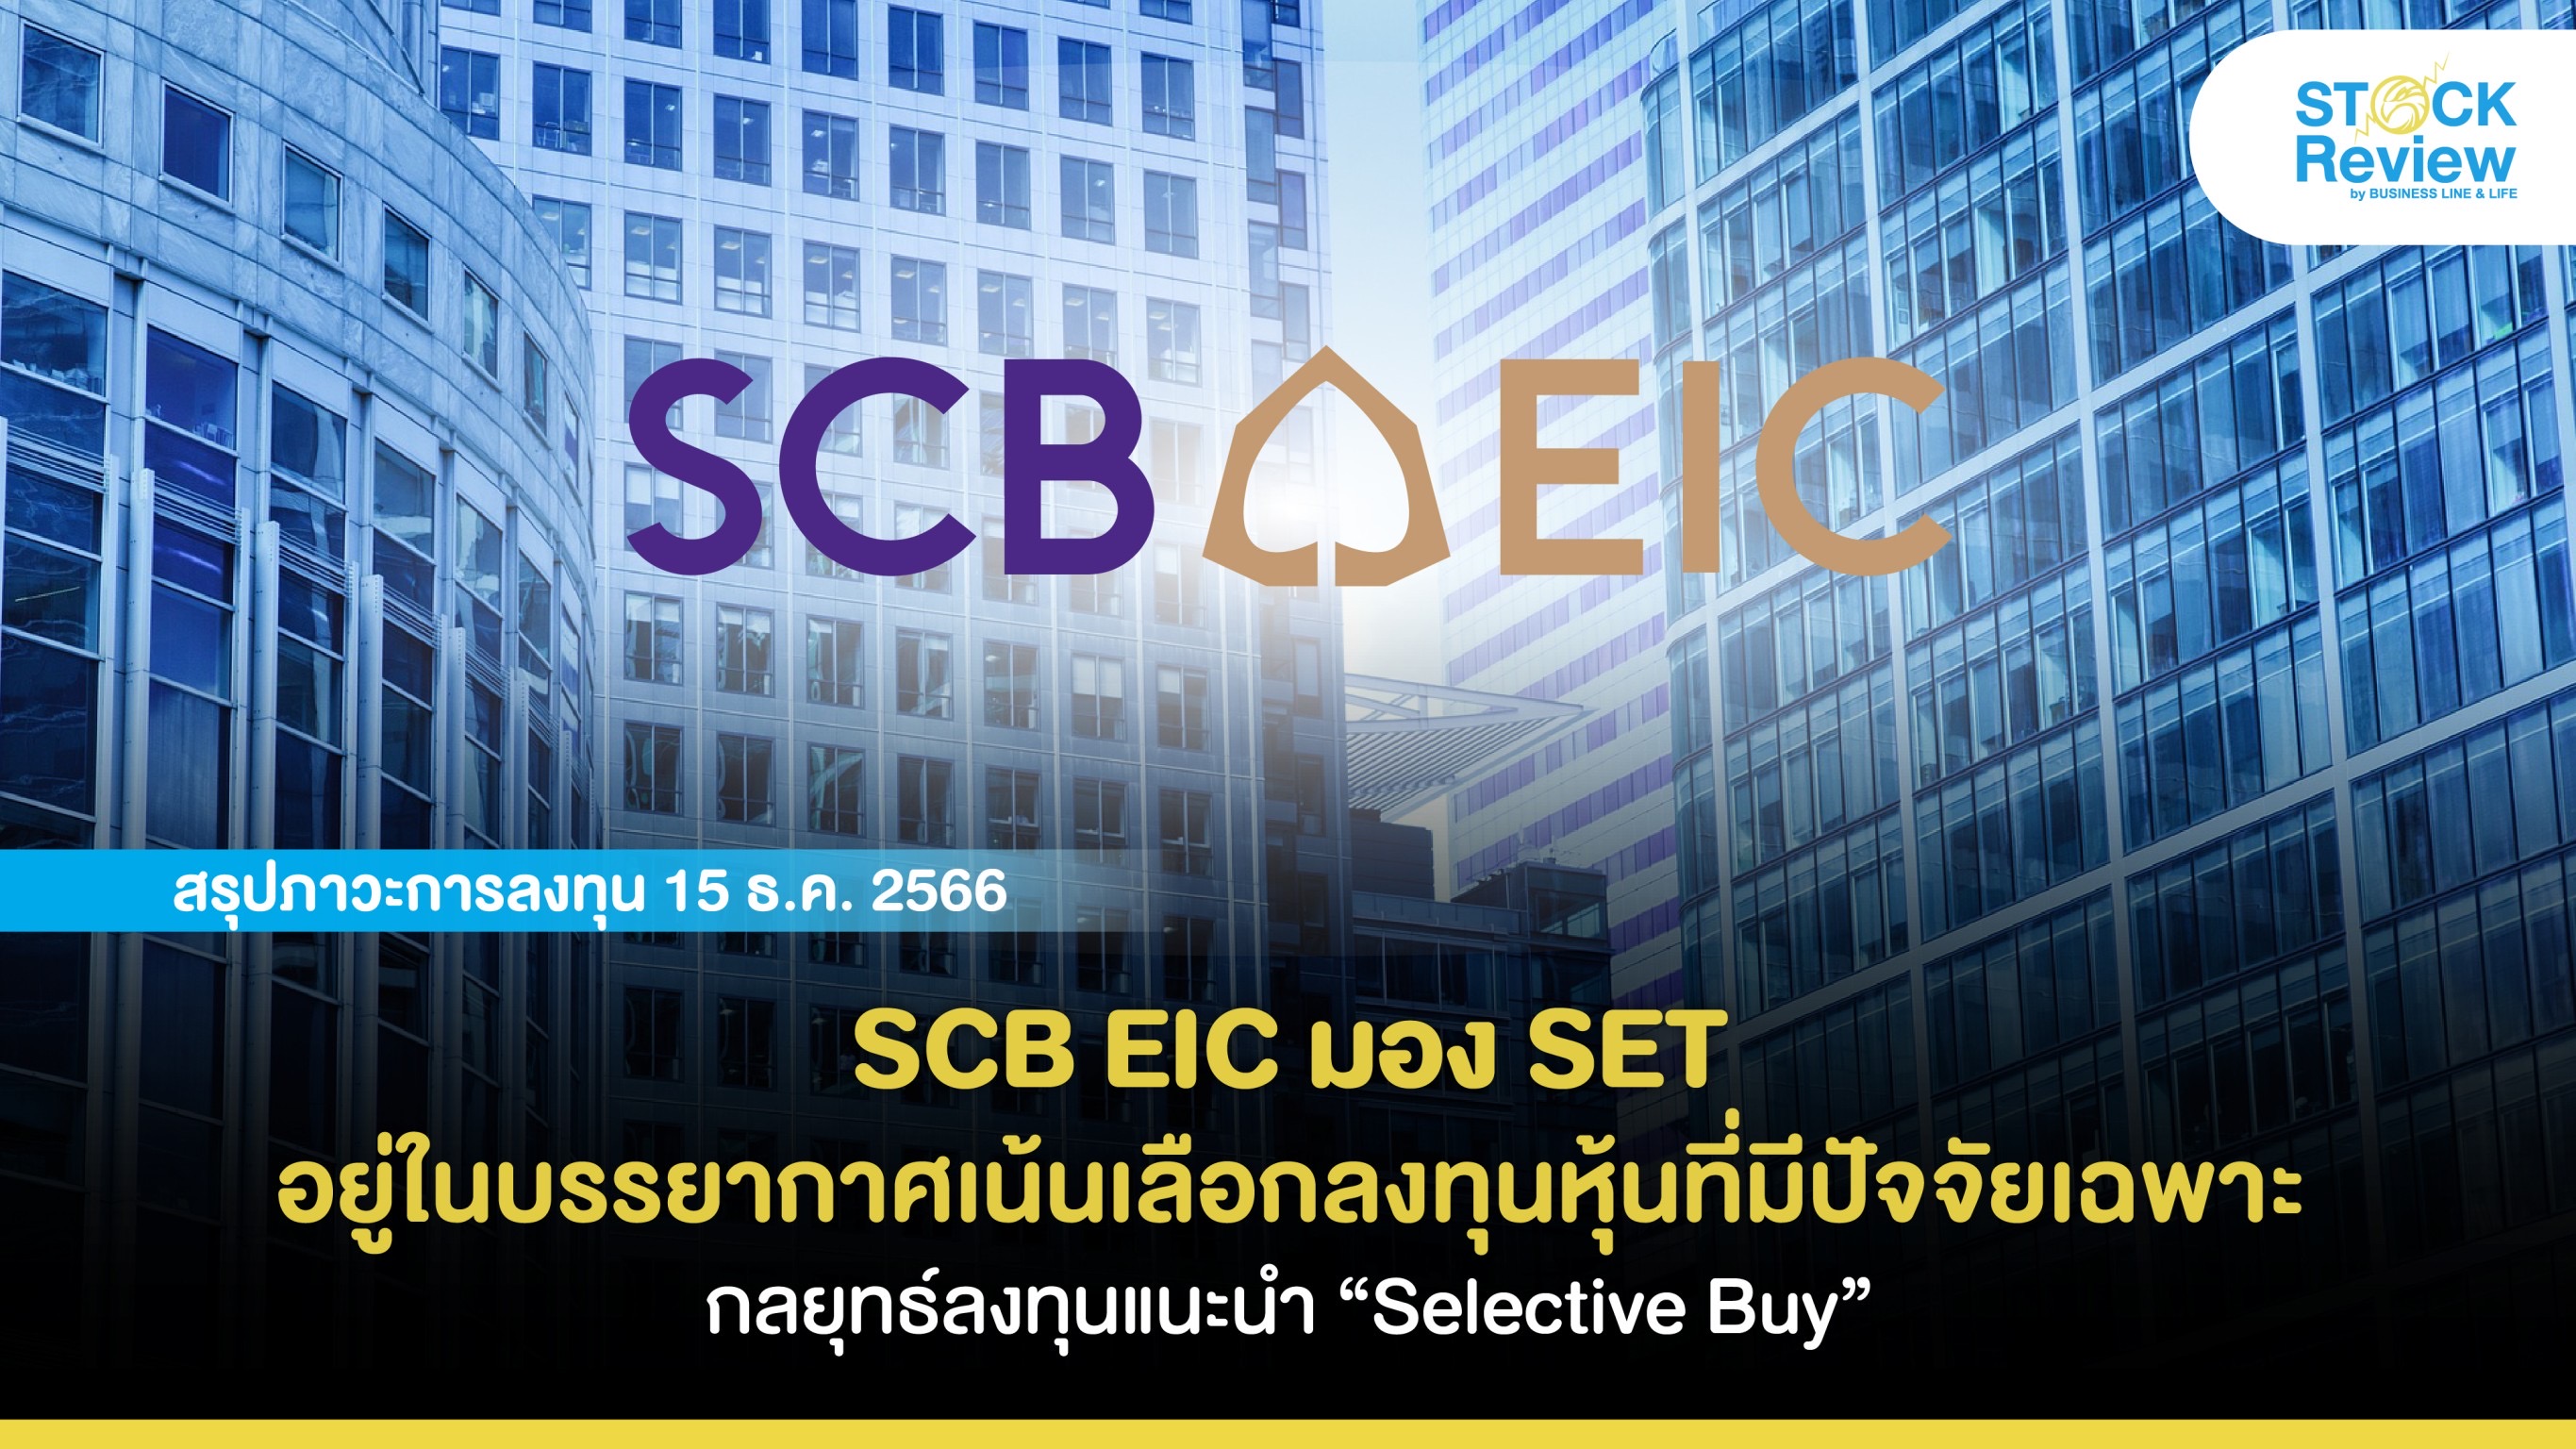 SCB EIC มอง SET อยู่ในบรรยากาศเน้นเลือกลงทุนหุ้นที่มีปัจจัยเฉพาะ กลยุทธ์ลงทุนแนะนำ “Selective Buy”